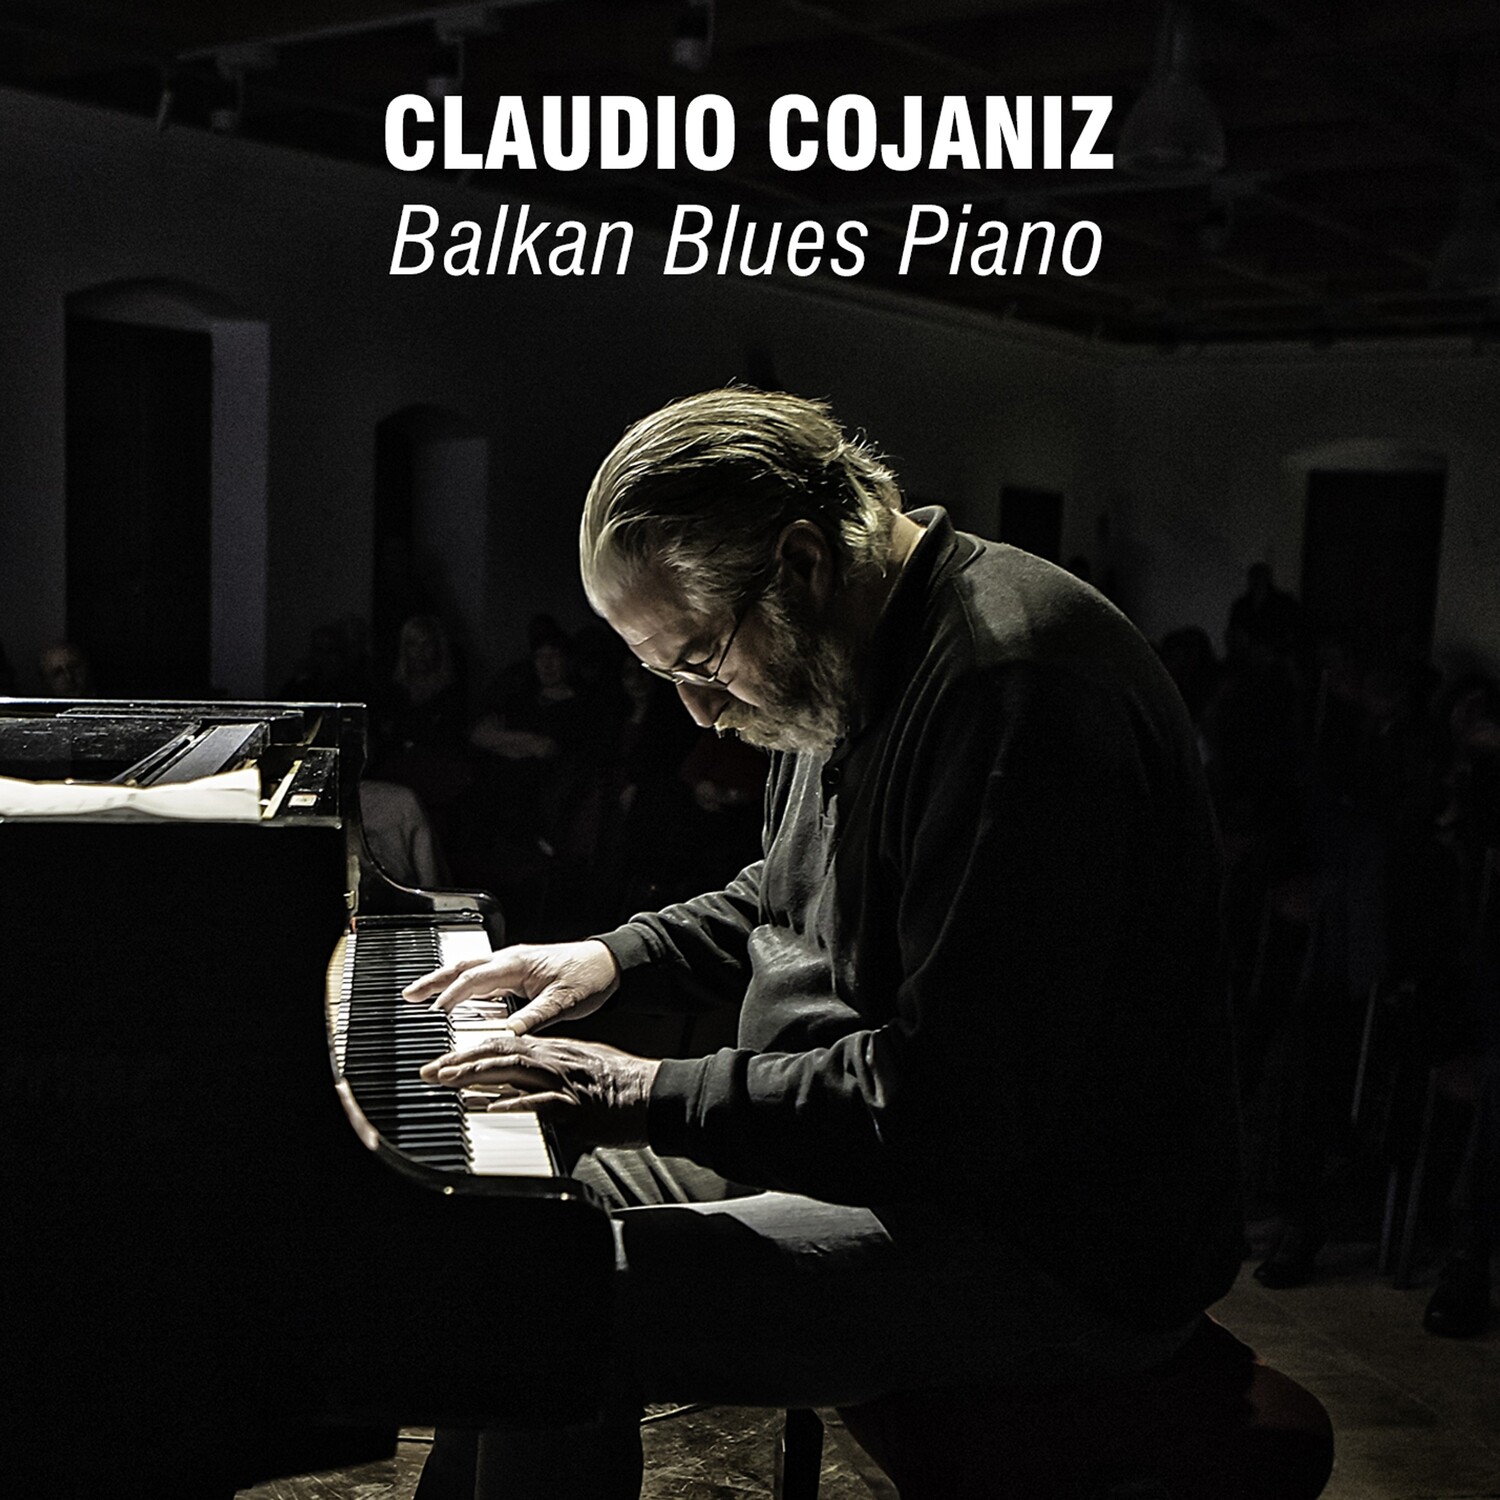 CLAUDIO COJANIZ «Balkan Blues Piano» - download digitale (files WAV, covers, booklet)